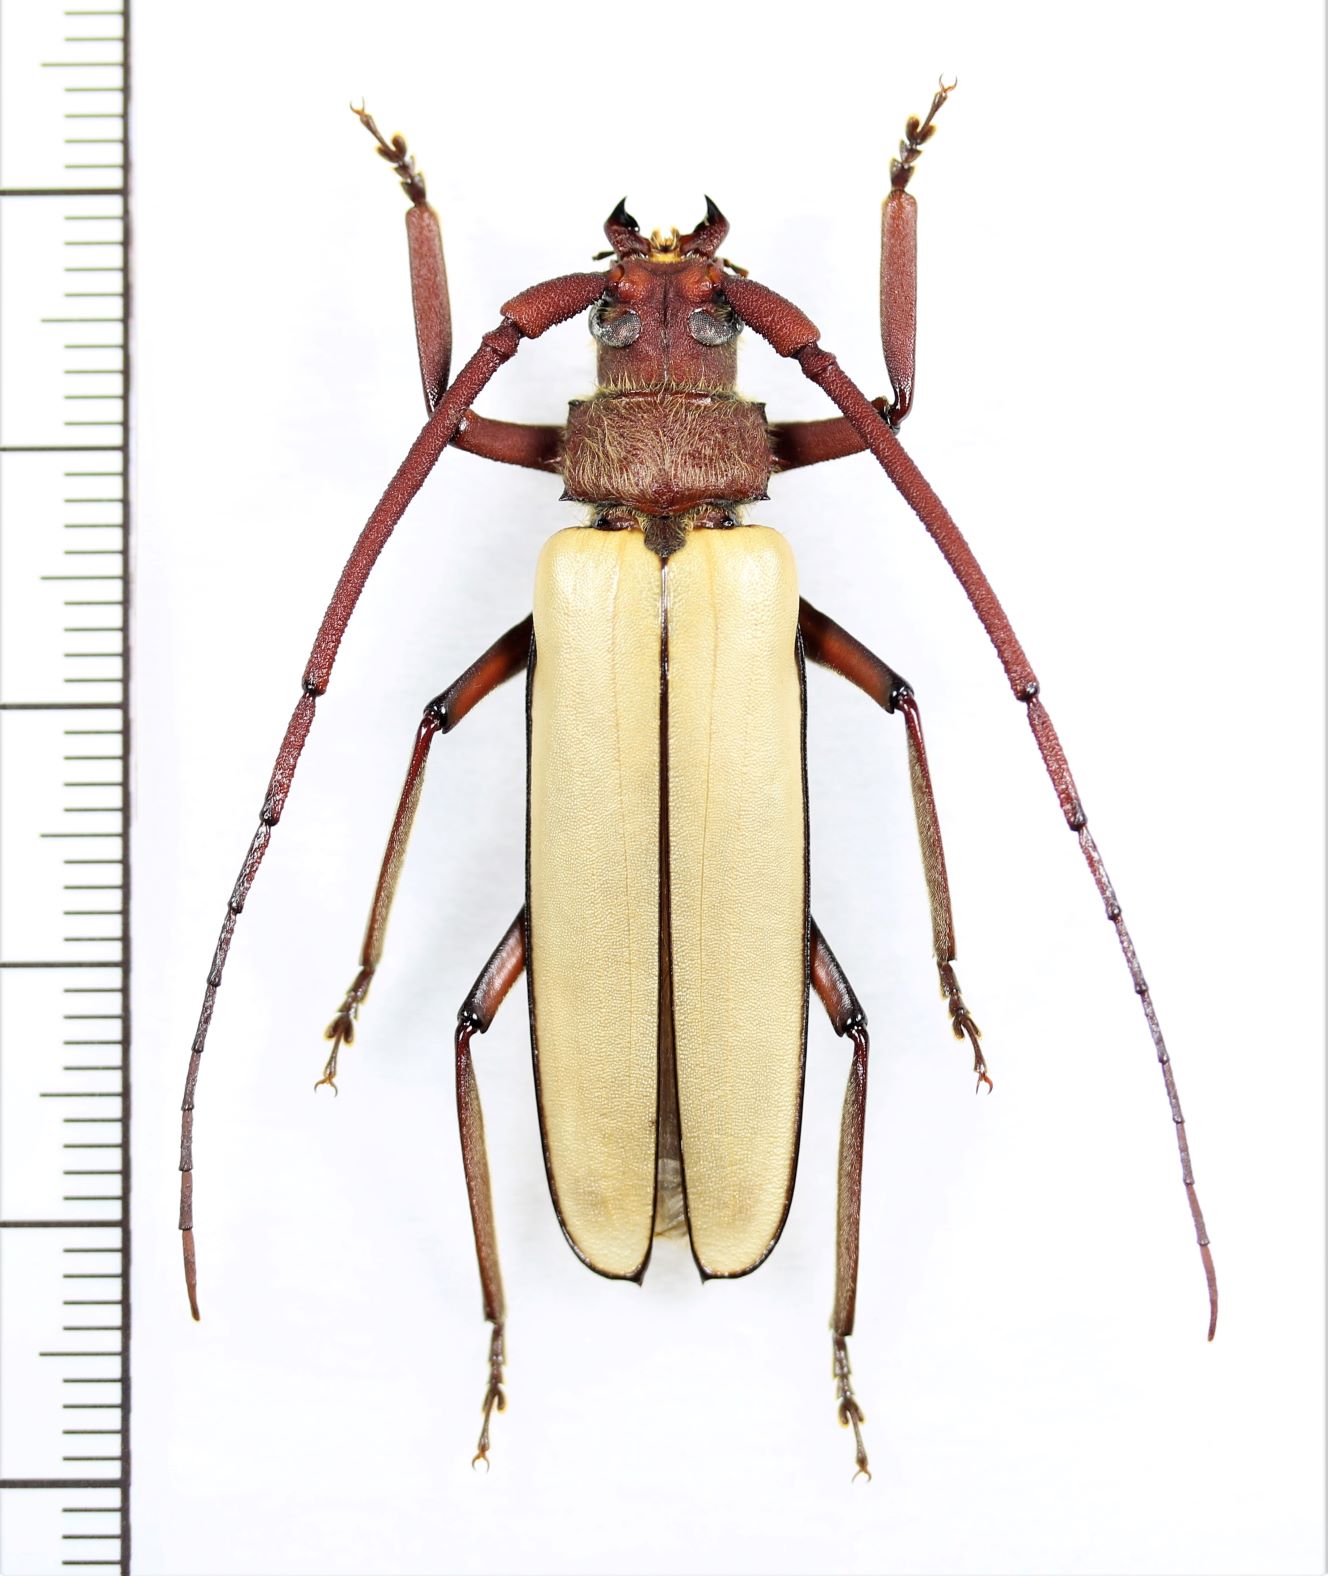 トゲウスバカミキリの一種 Prioninae species ベトナム中部 - Insect 